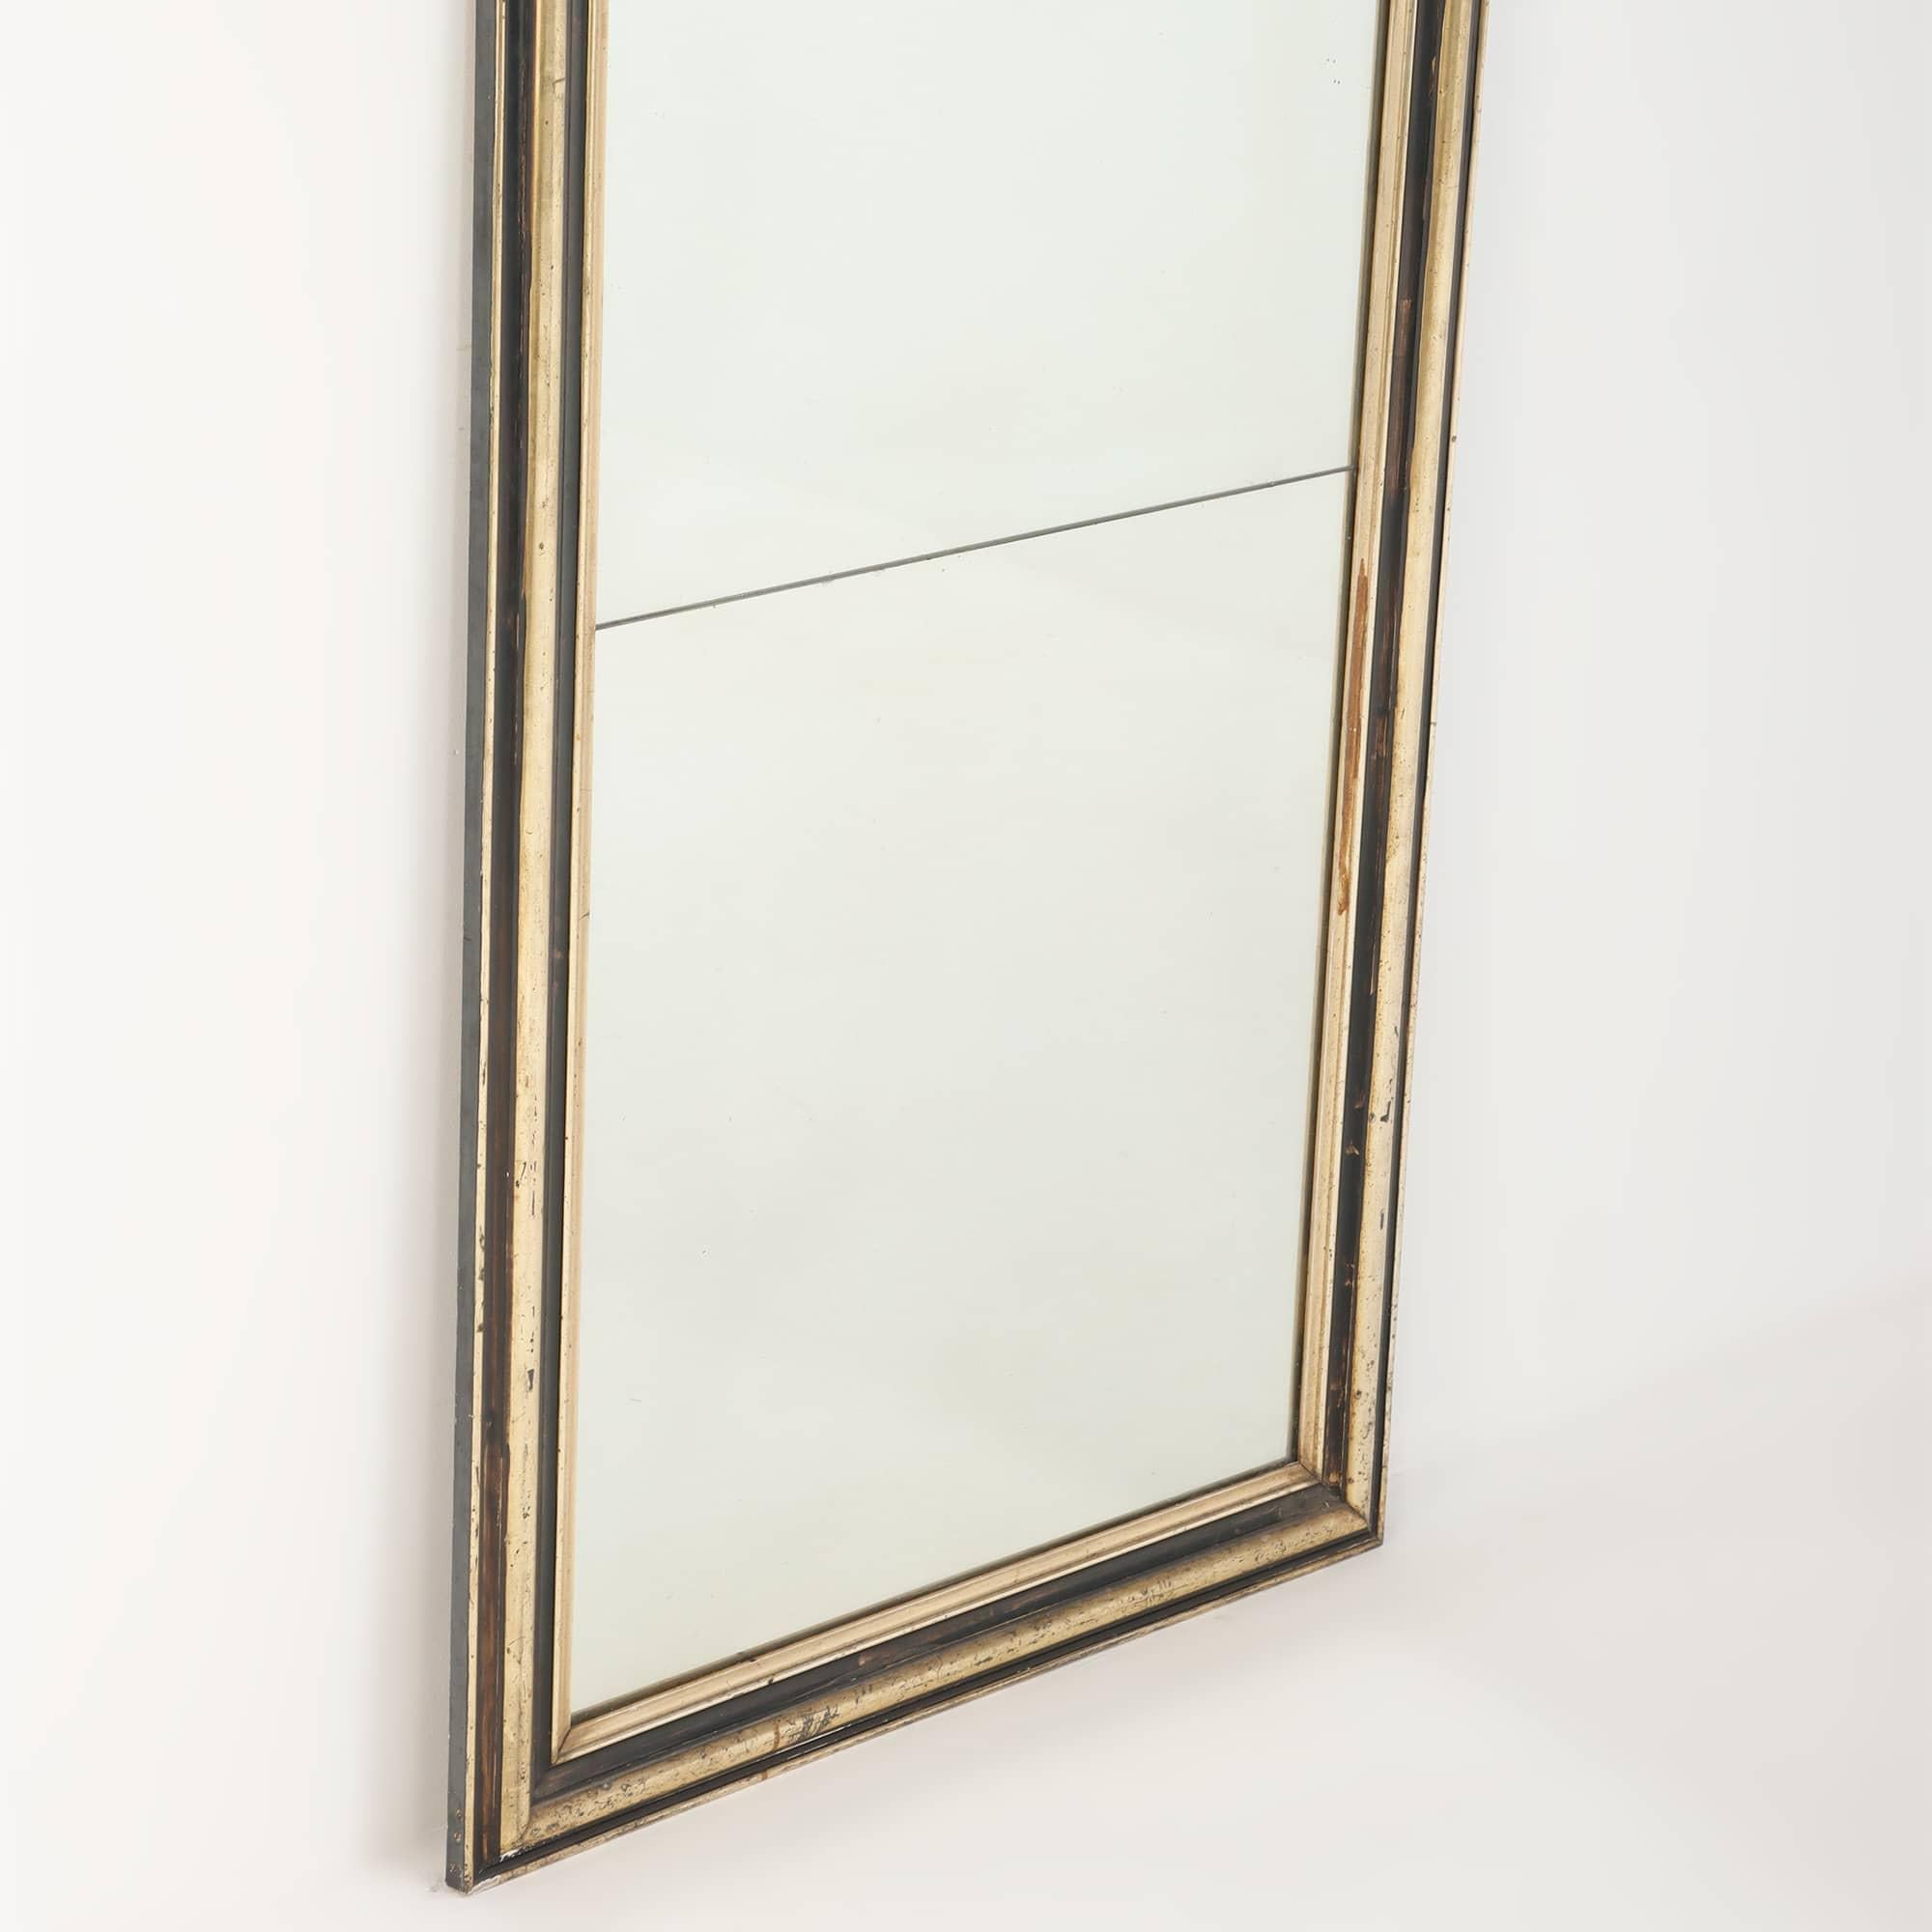 Miroir français avec cadre partiellement ébénisé et doré C 1860. La dorure est d'un or argenté. Le dos porte l'étiquette de F. Toute Rouen.